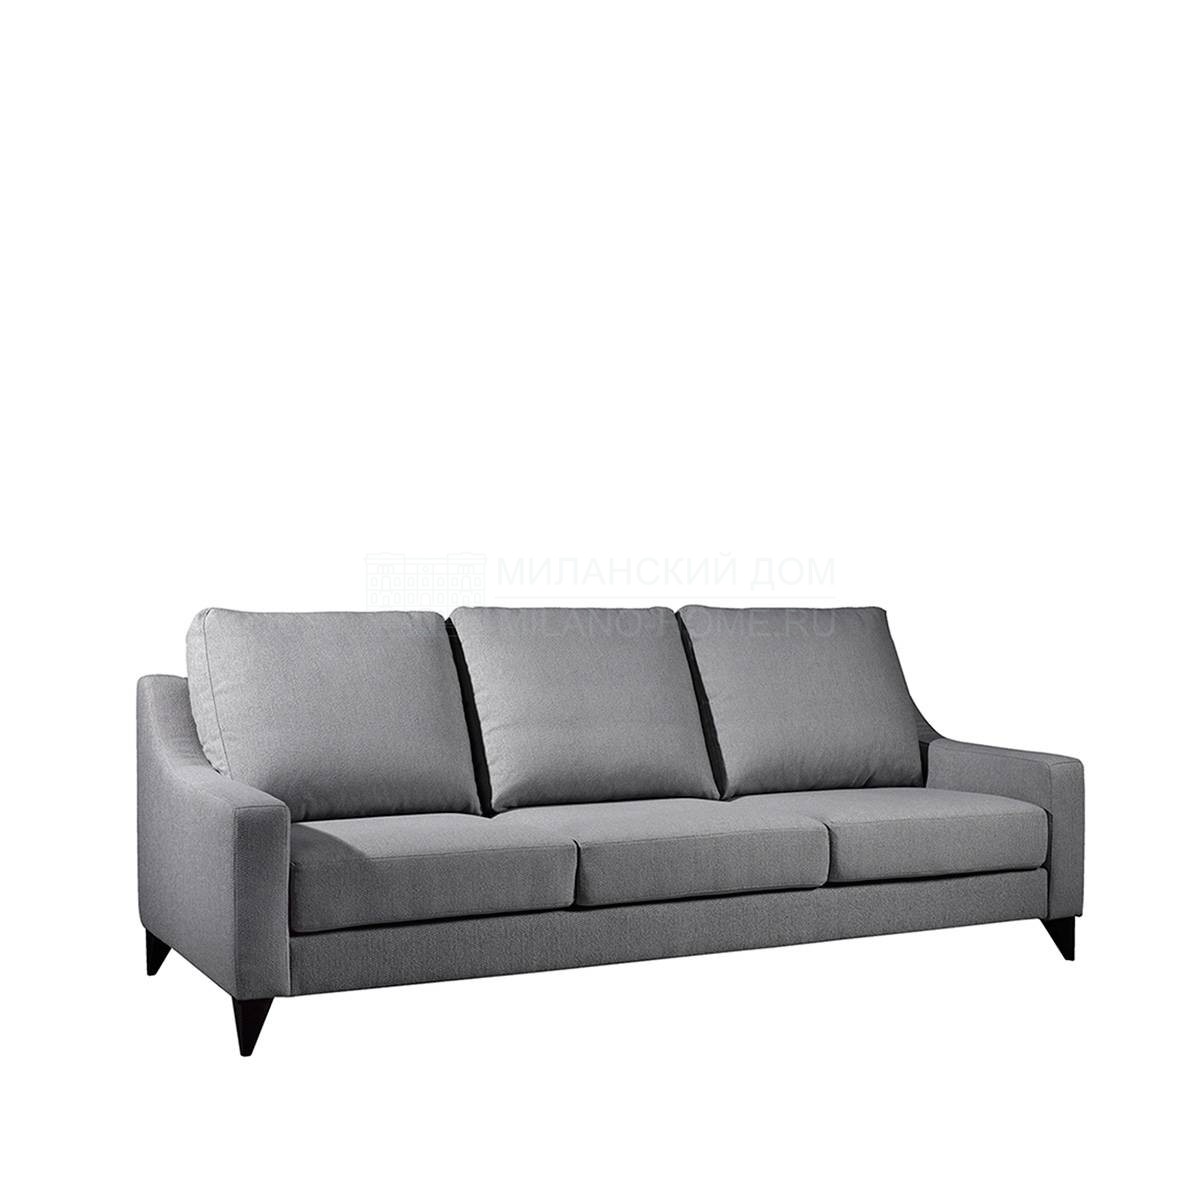 Прямой диван Sarah sofa / art.A4550 из Испании фабрики COLECCION ALEXANDRA